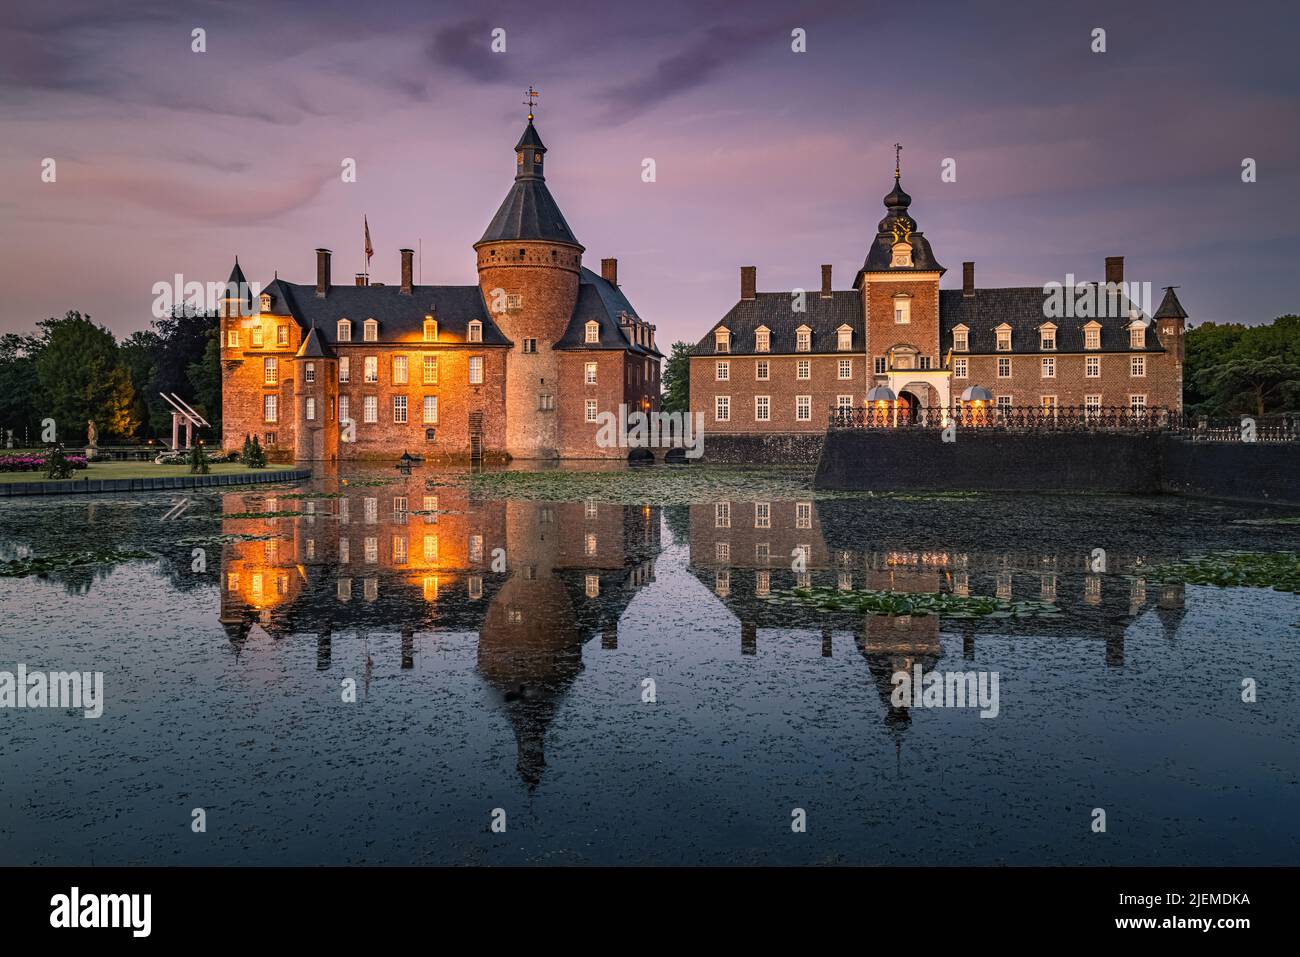 En Alemania, cerca de la frontera holandesa se encuentra el castillo de Anholt, uno de los pocos castillos privados de Renania del Norte-Westfalia. Aparece primero Foto de stock